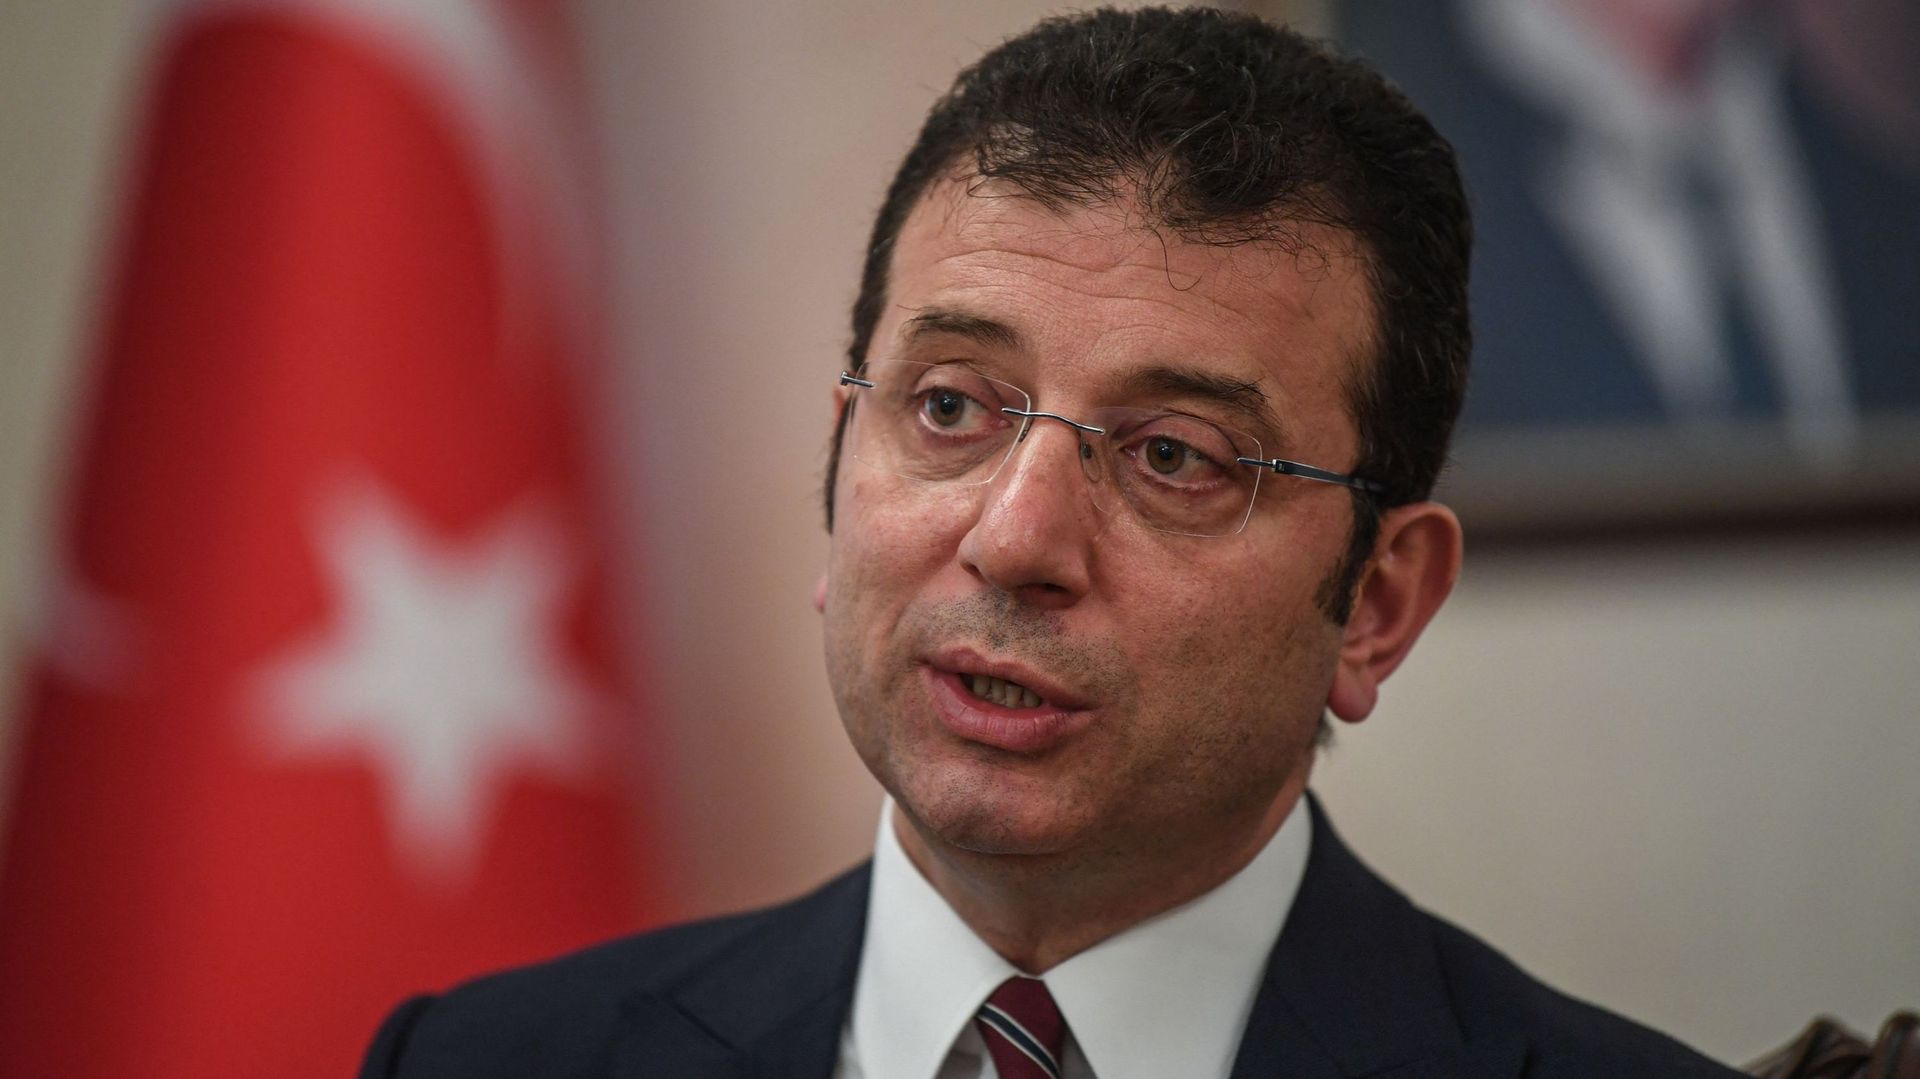 Turquie: enquête contre le maire d'Istanbul, rival d'Erdogan, pour "irrespect" envers un sultan